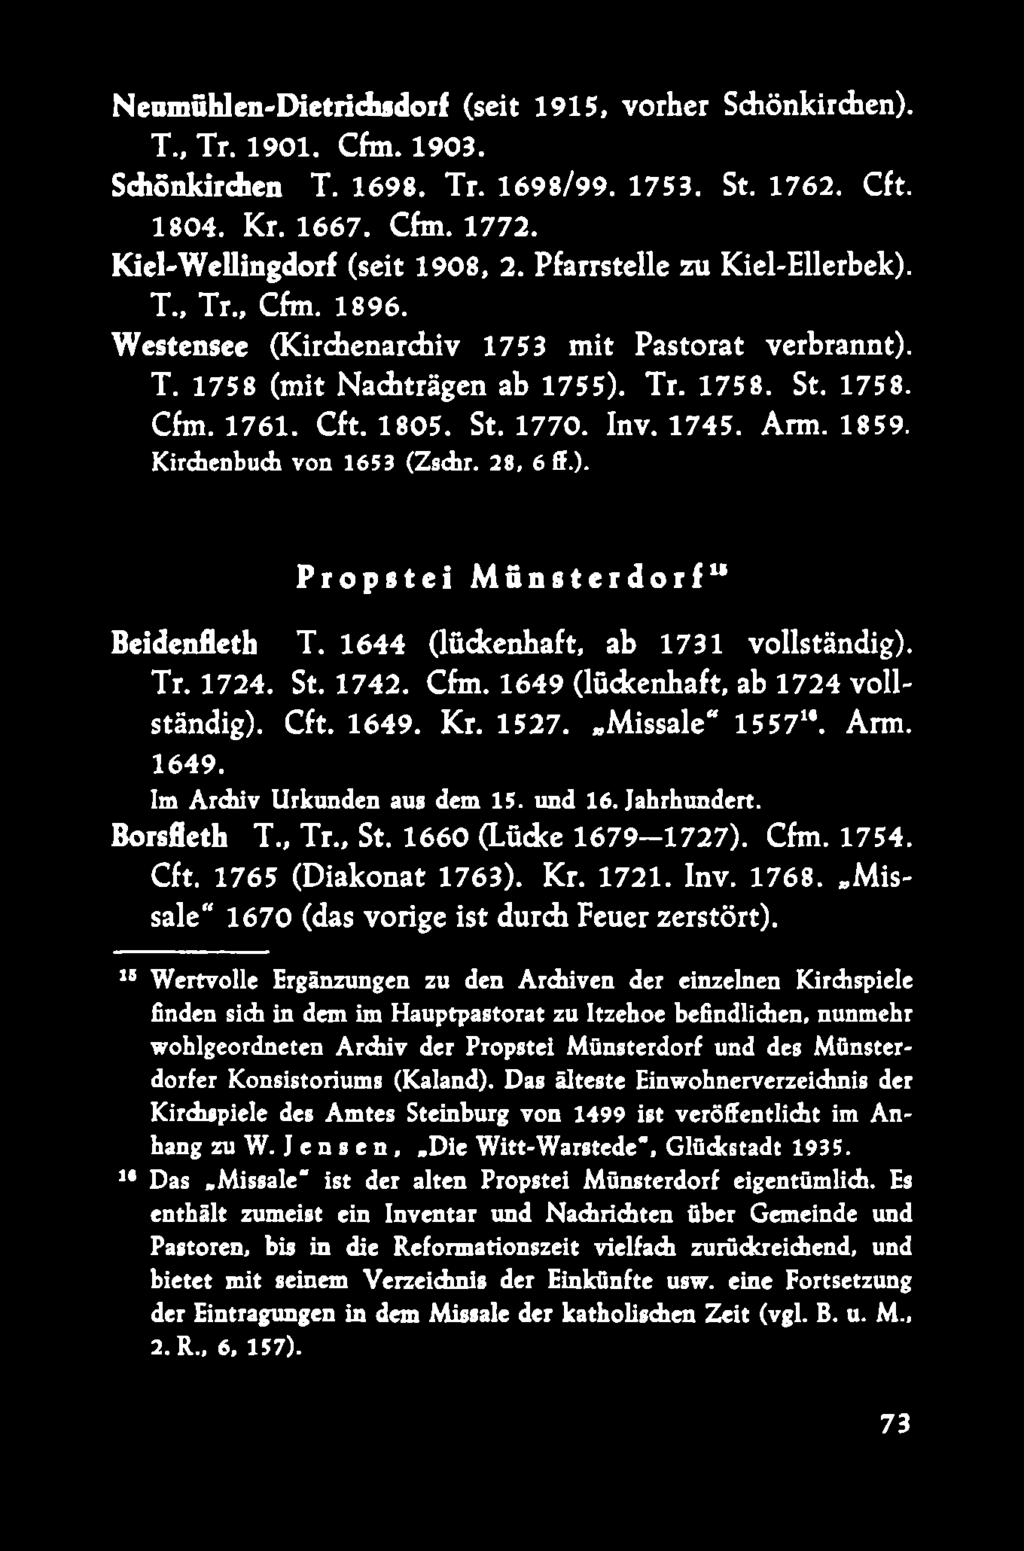 1745. Arm. 1859. Kirchenbuch von 1653 (Zschr. 28, 6 ff.). Propstei Münsterdorfu Beidenfleth T. 1644 (lückenhaft, ab 1731 vollständig). Tr. 1724. St. 1742. Cfm. 1649 (lückenhaft, ab 1724 vollständig).